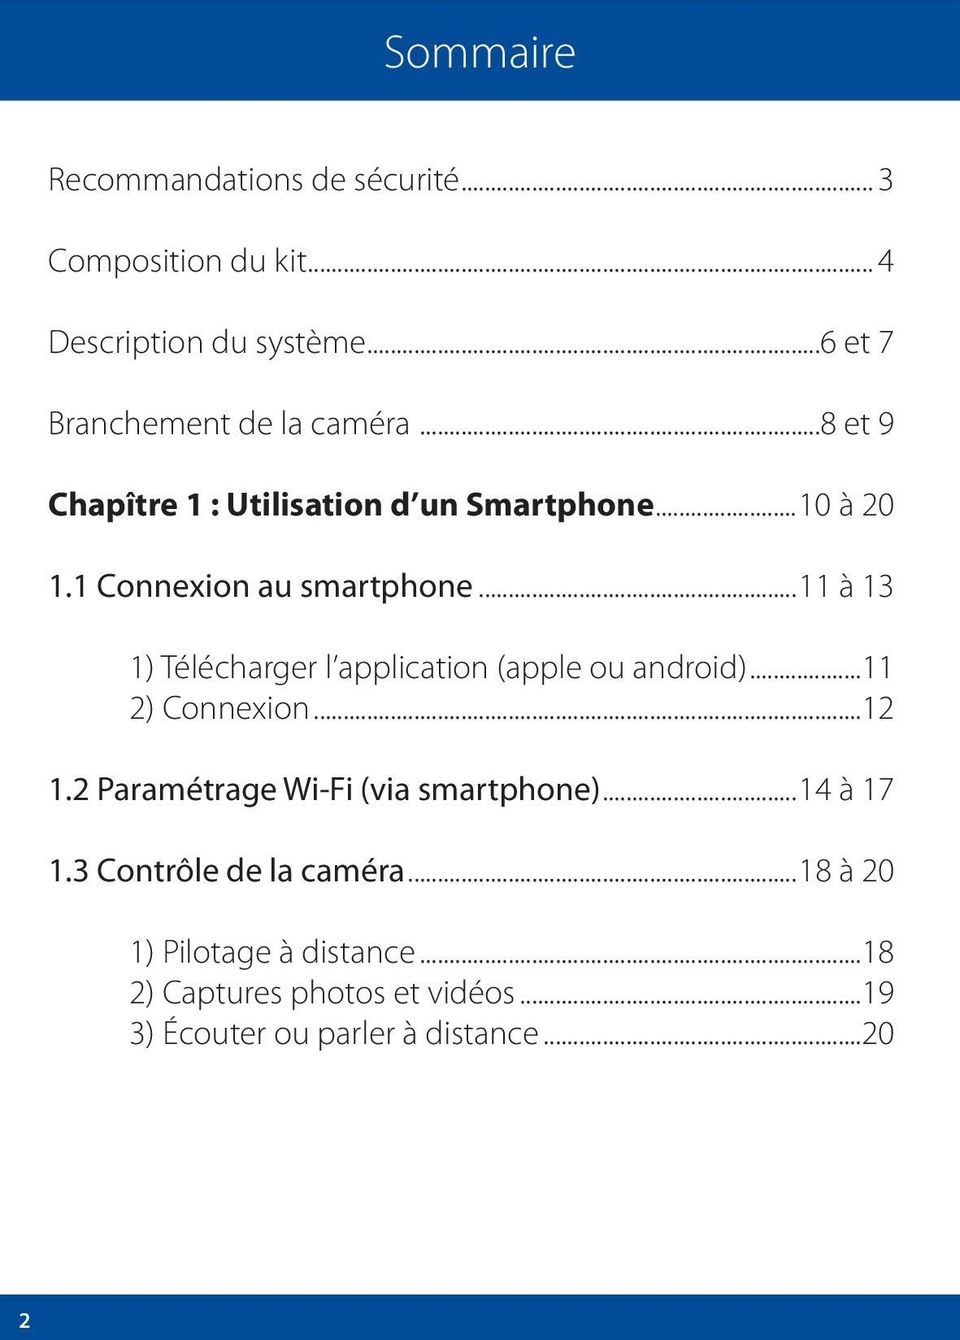 1 Connexion au smartphone...11 à 13 1) Télécharger l application (apple ou android)...11 2) Connexion...12 1.